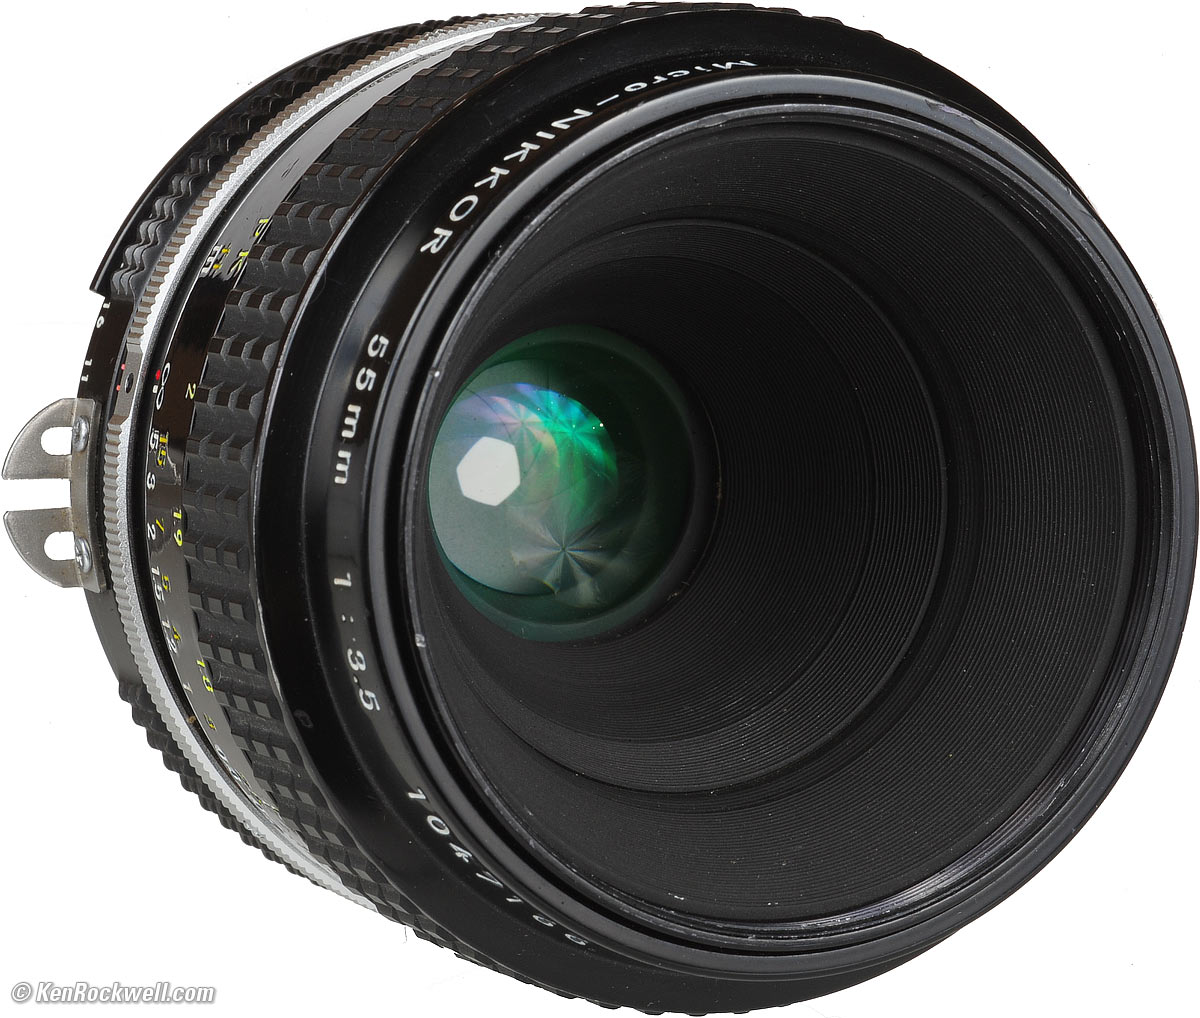 Nikon 55mm f/3.5 Review